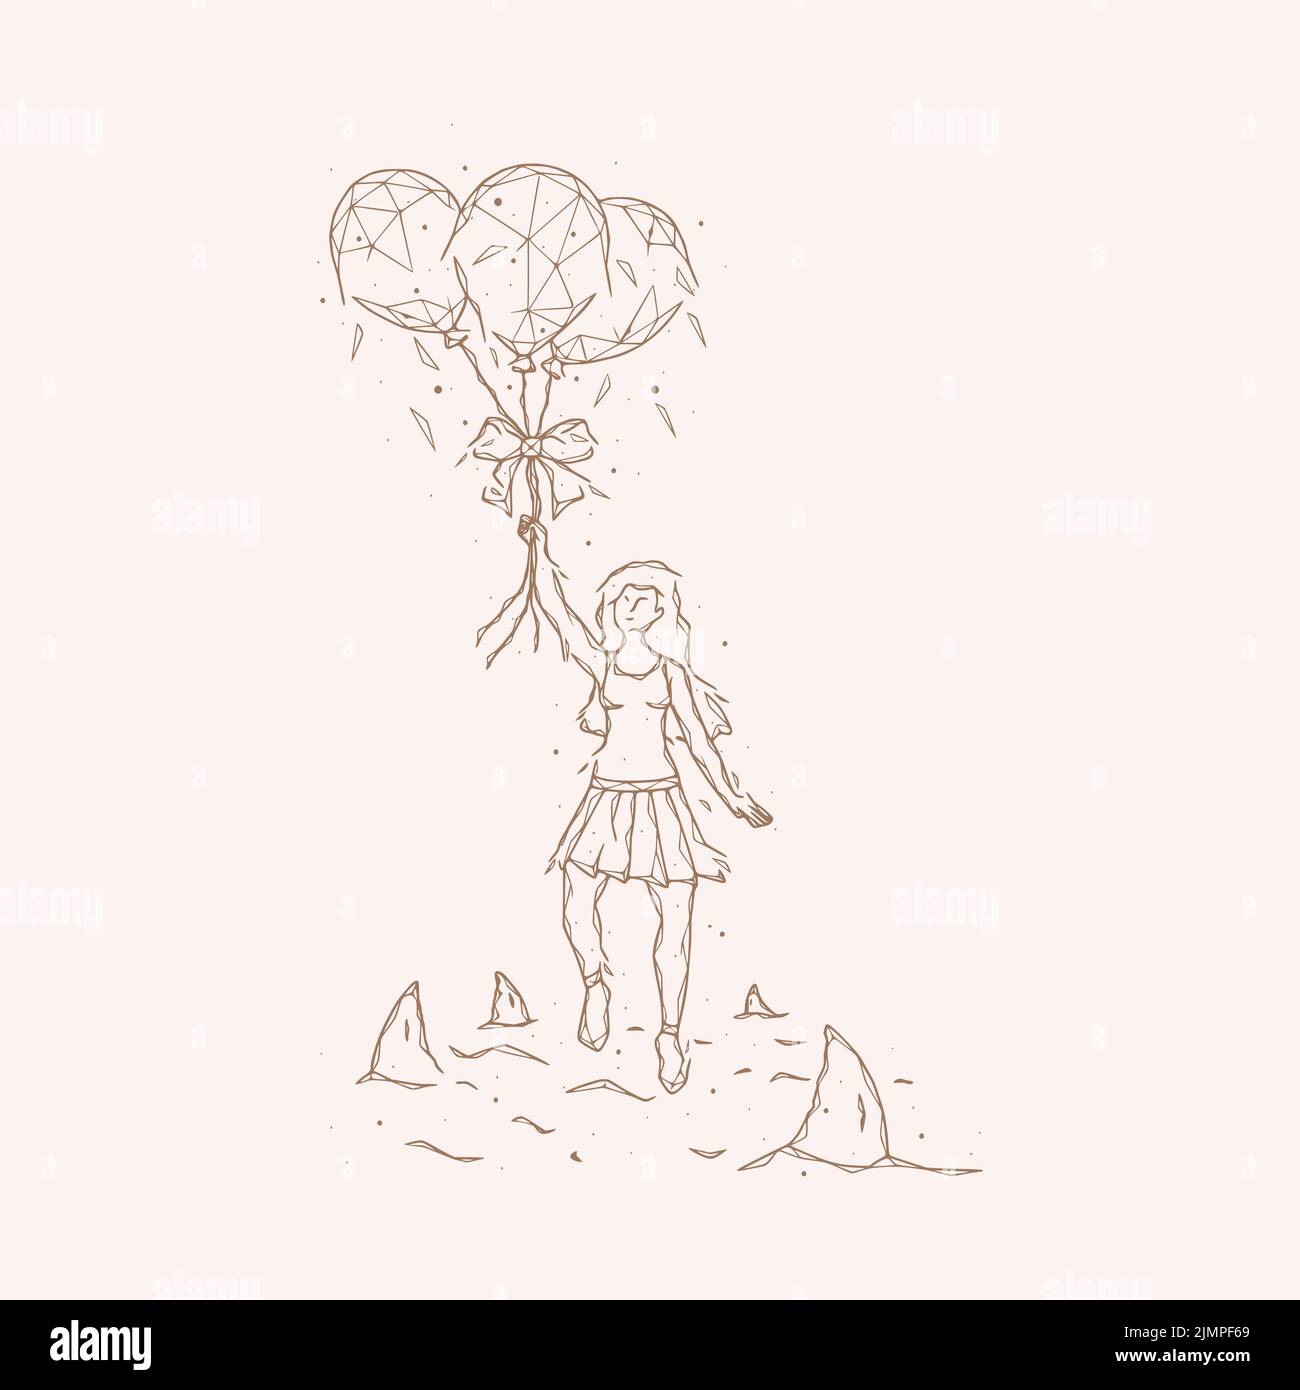 Illustrazione vettoriale poligonale di una ragazza con palloncini che vola via dagli squali. Concetto psicologico di evitare problemi. Foto Stock